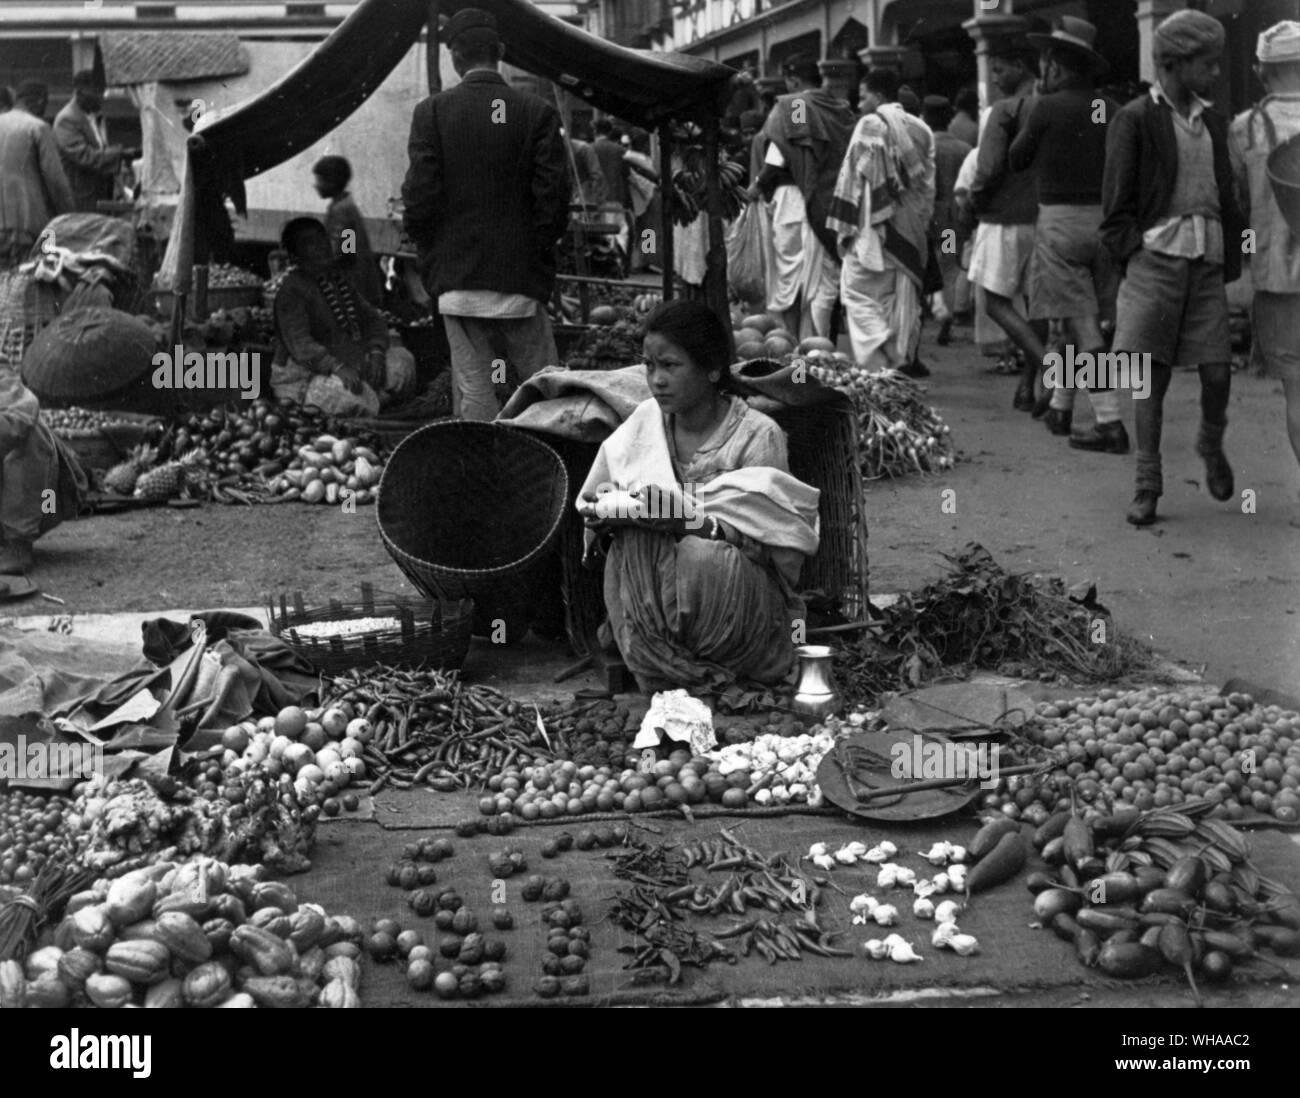 Market scene in Darjeeling Stock Photo